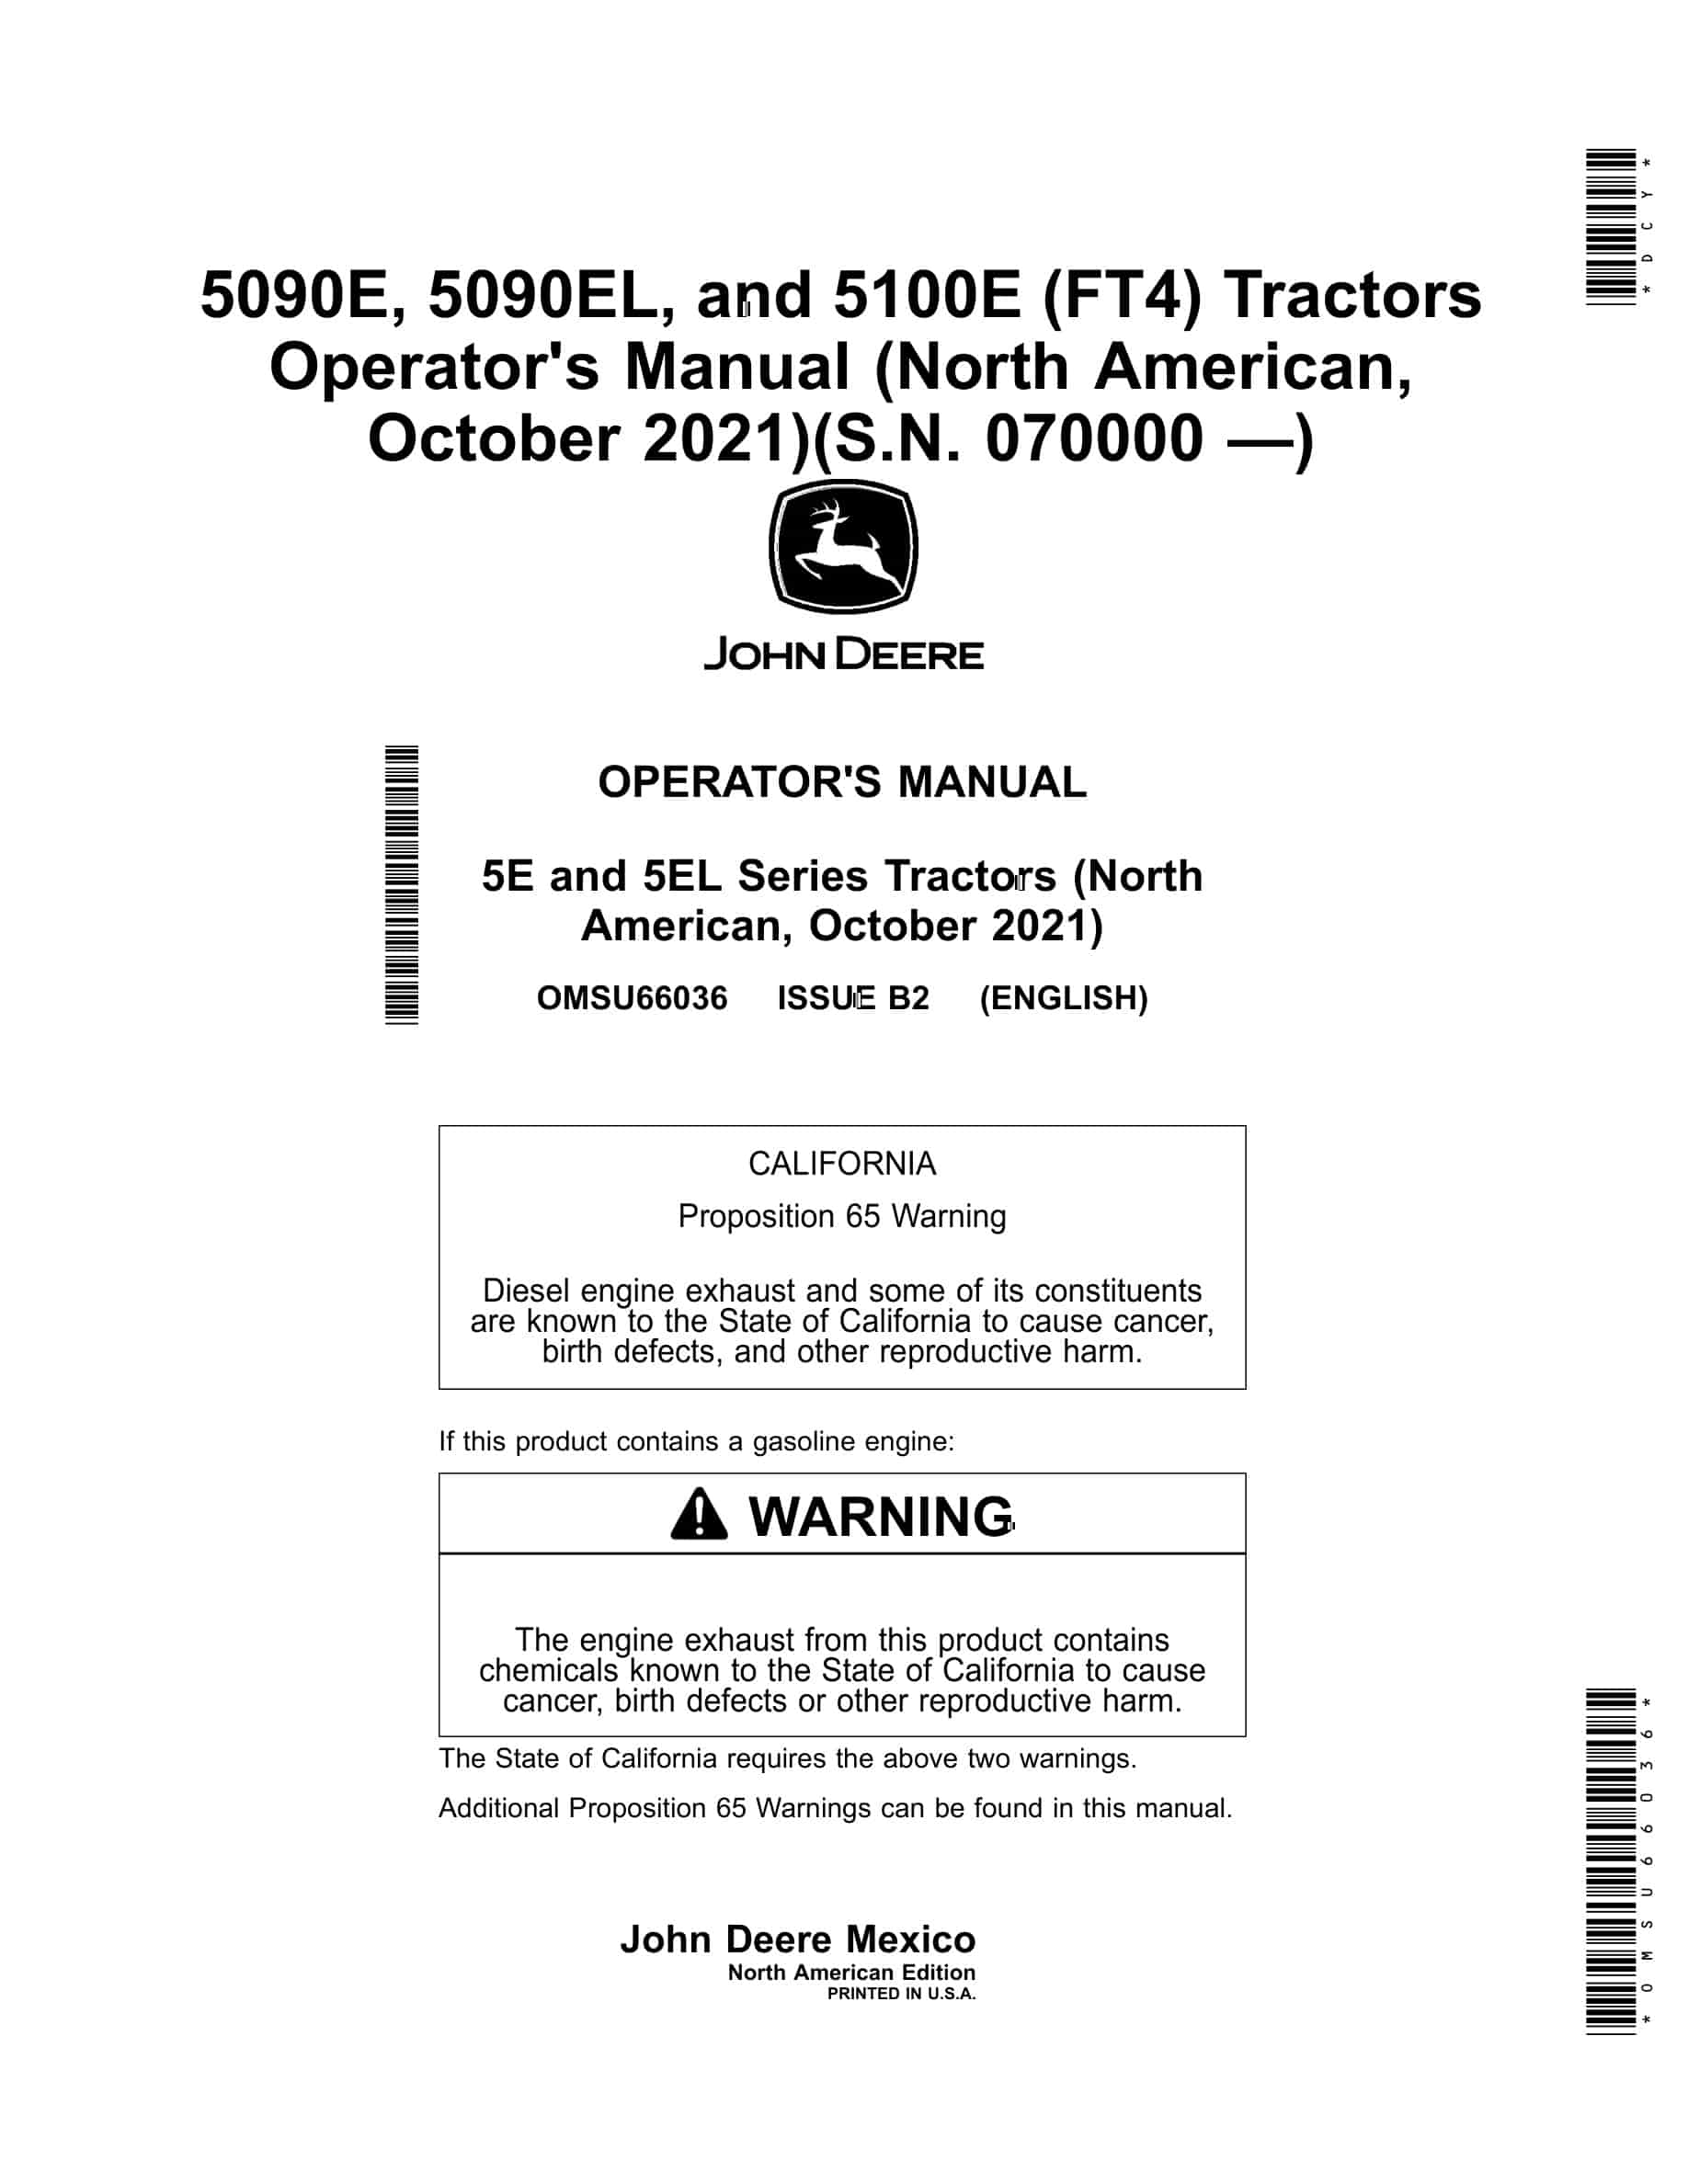 John Deere 5090e, 5090el, And 5100e (ft4) Tractors Operator Manuals OMSU66036-1